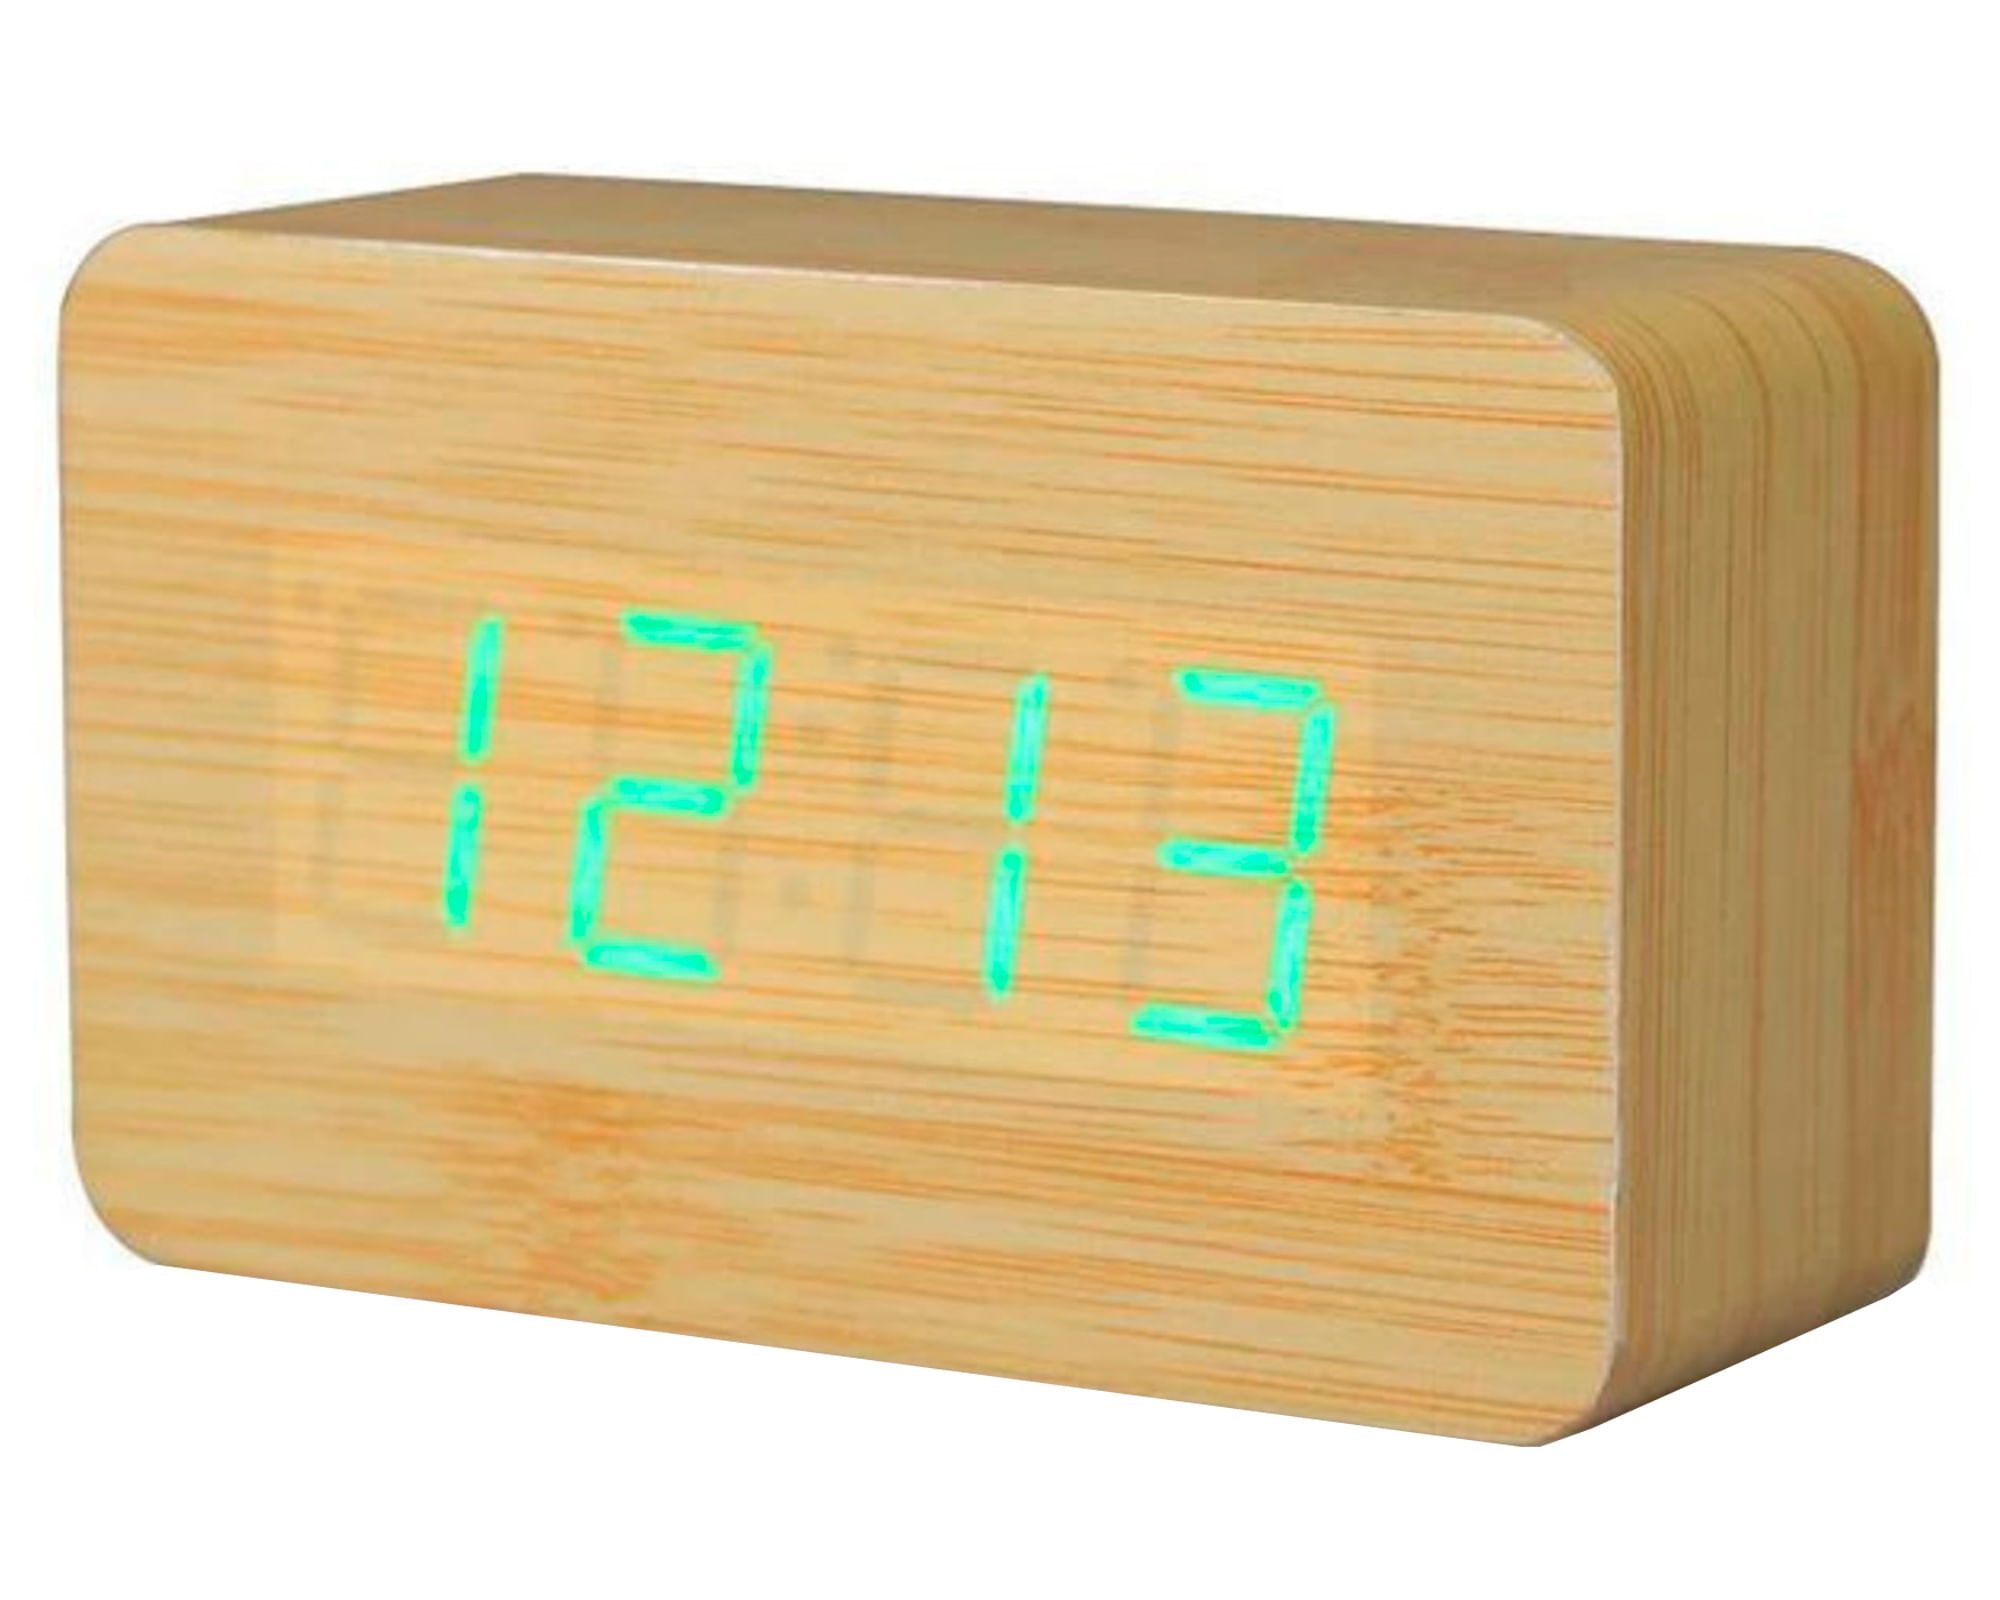 Reloj despertador madera 10x10 cm natural